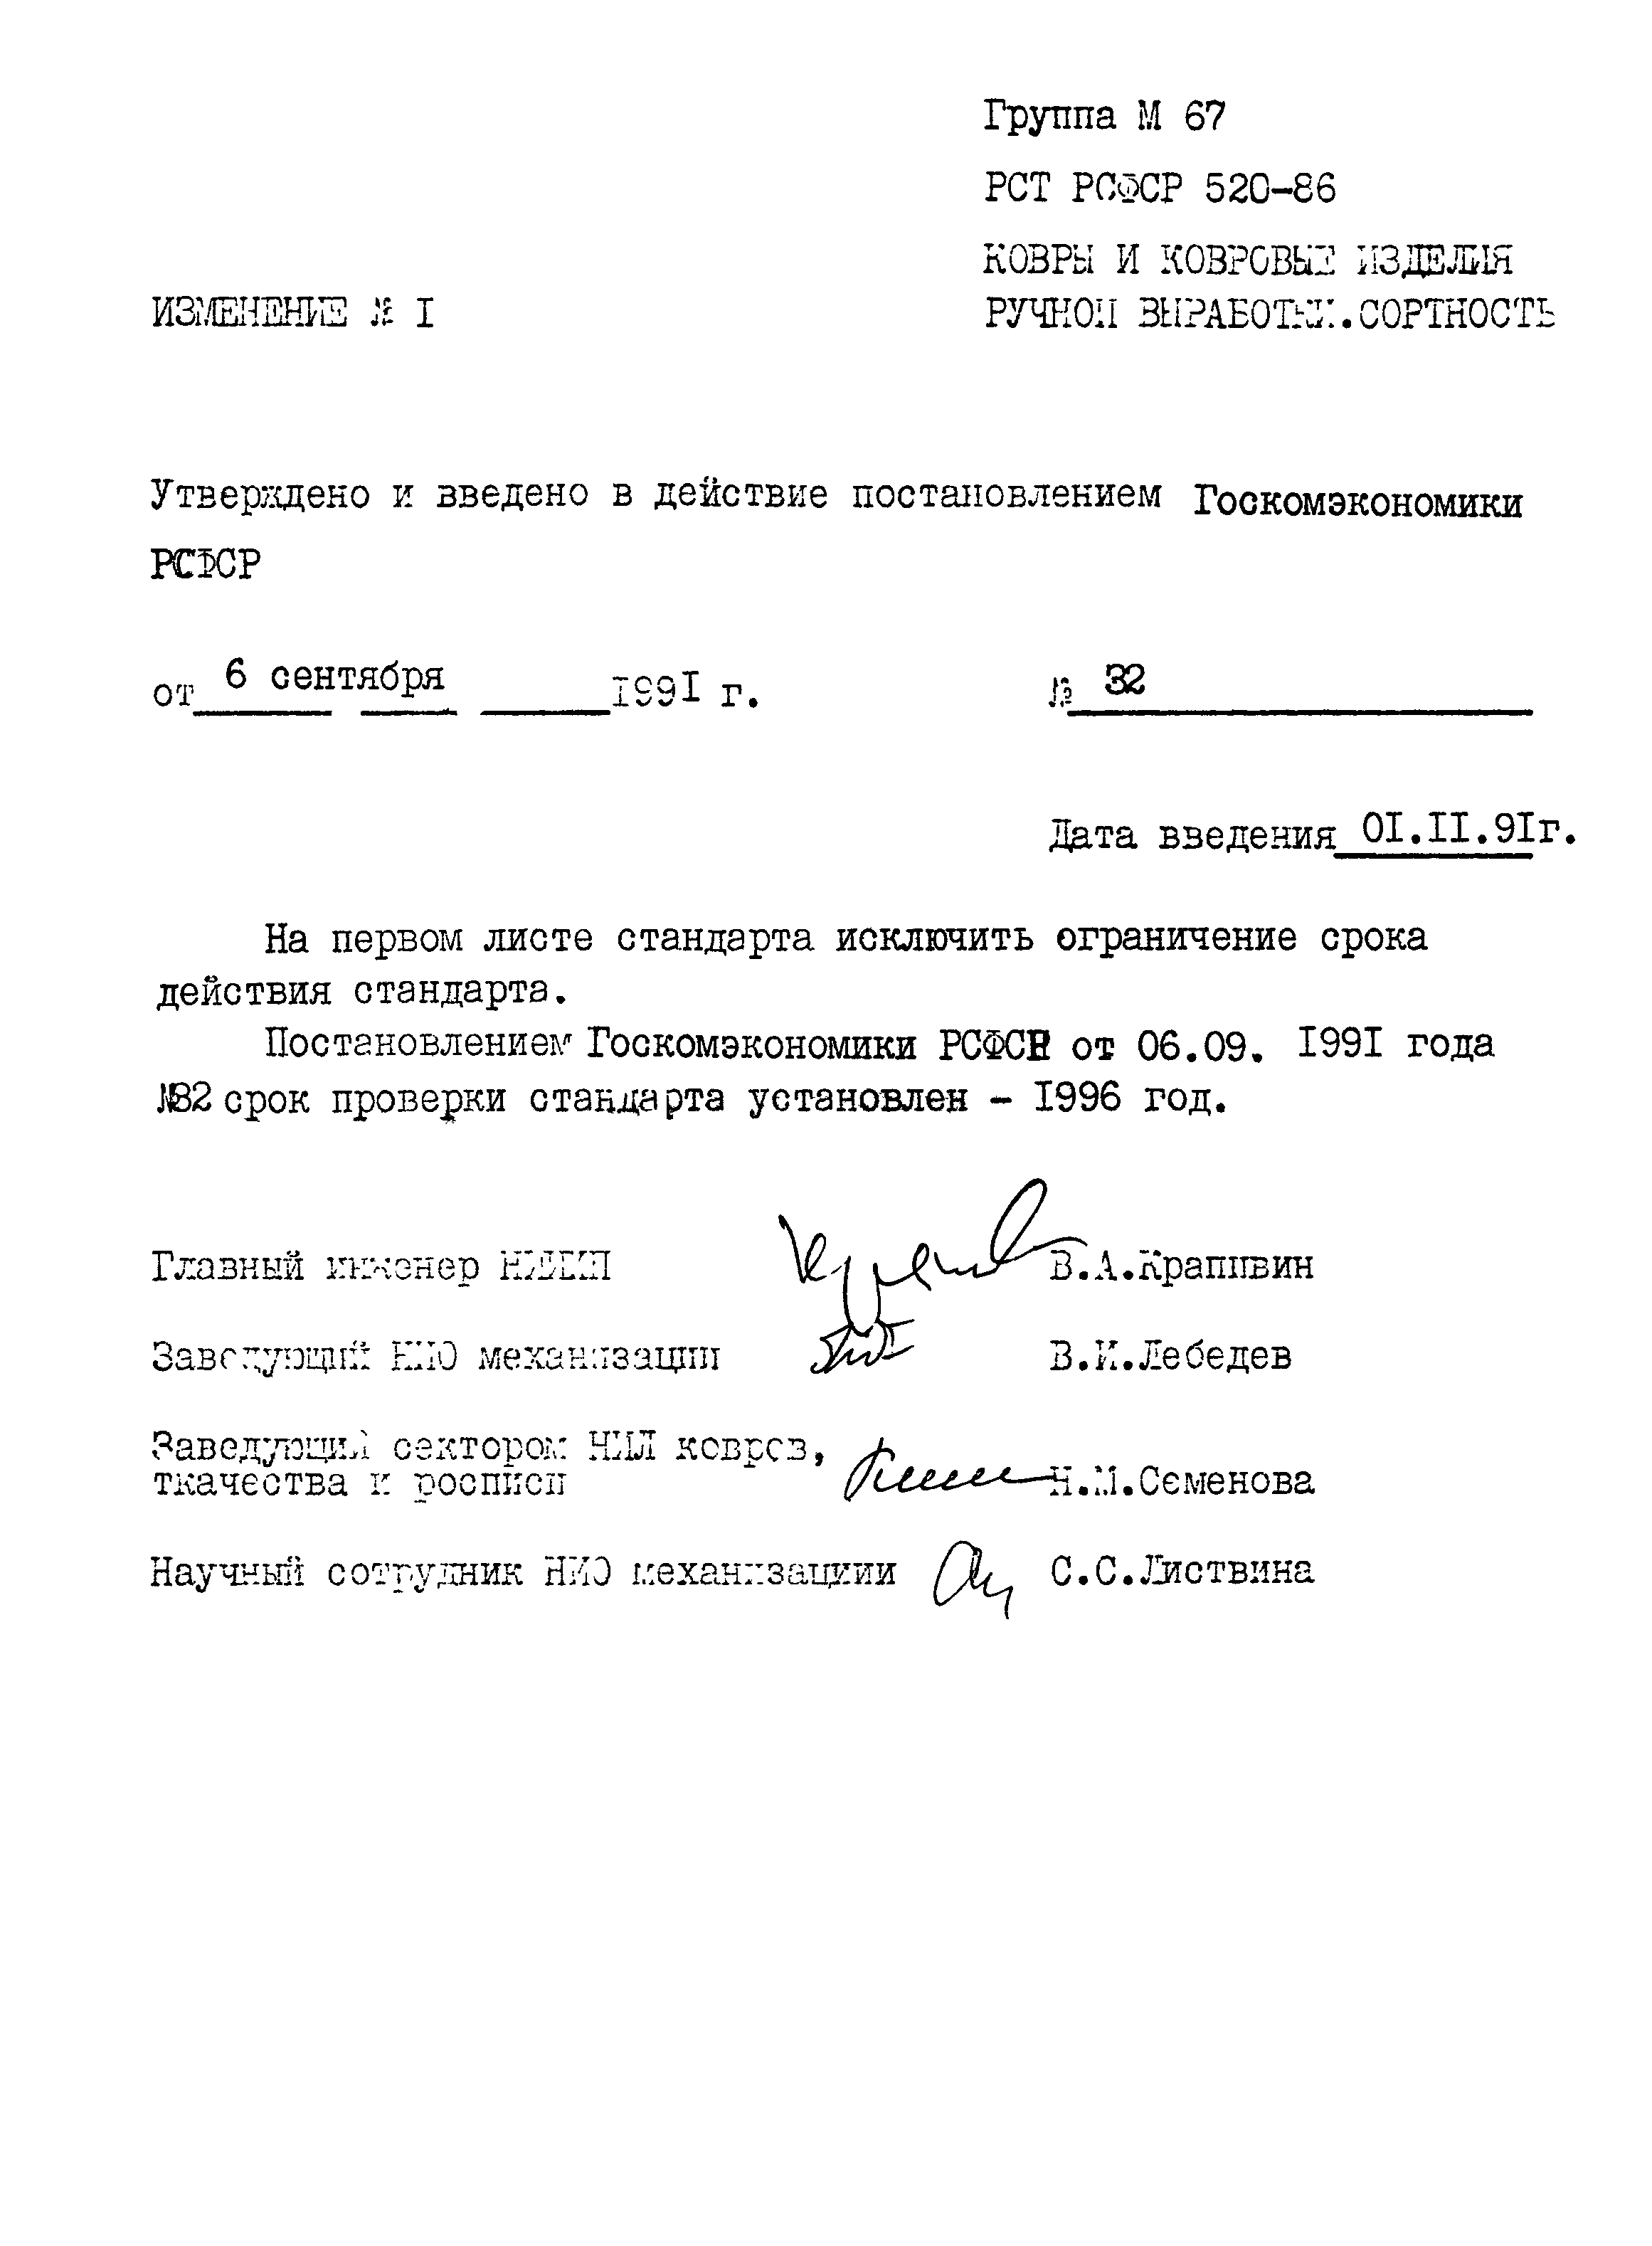 РСТ РСФСР 520-86